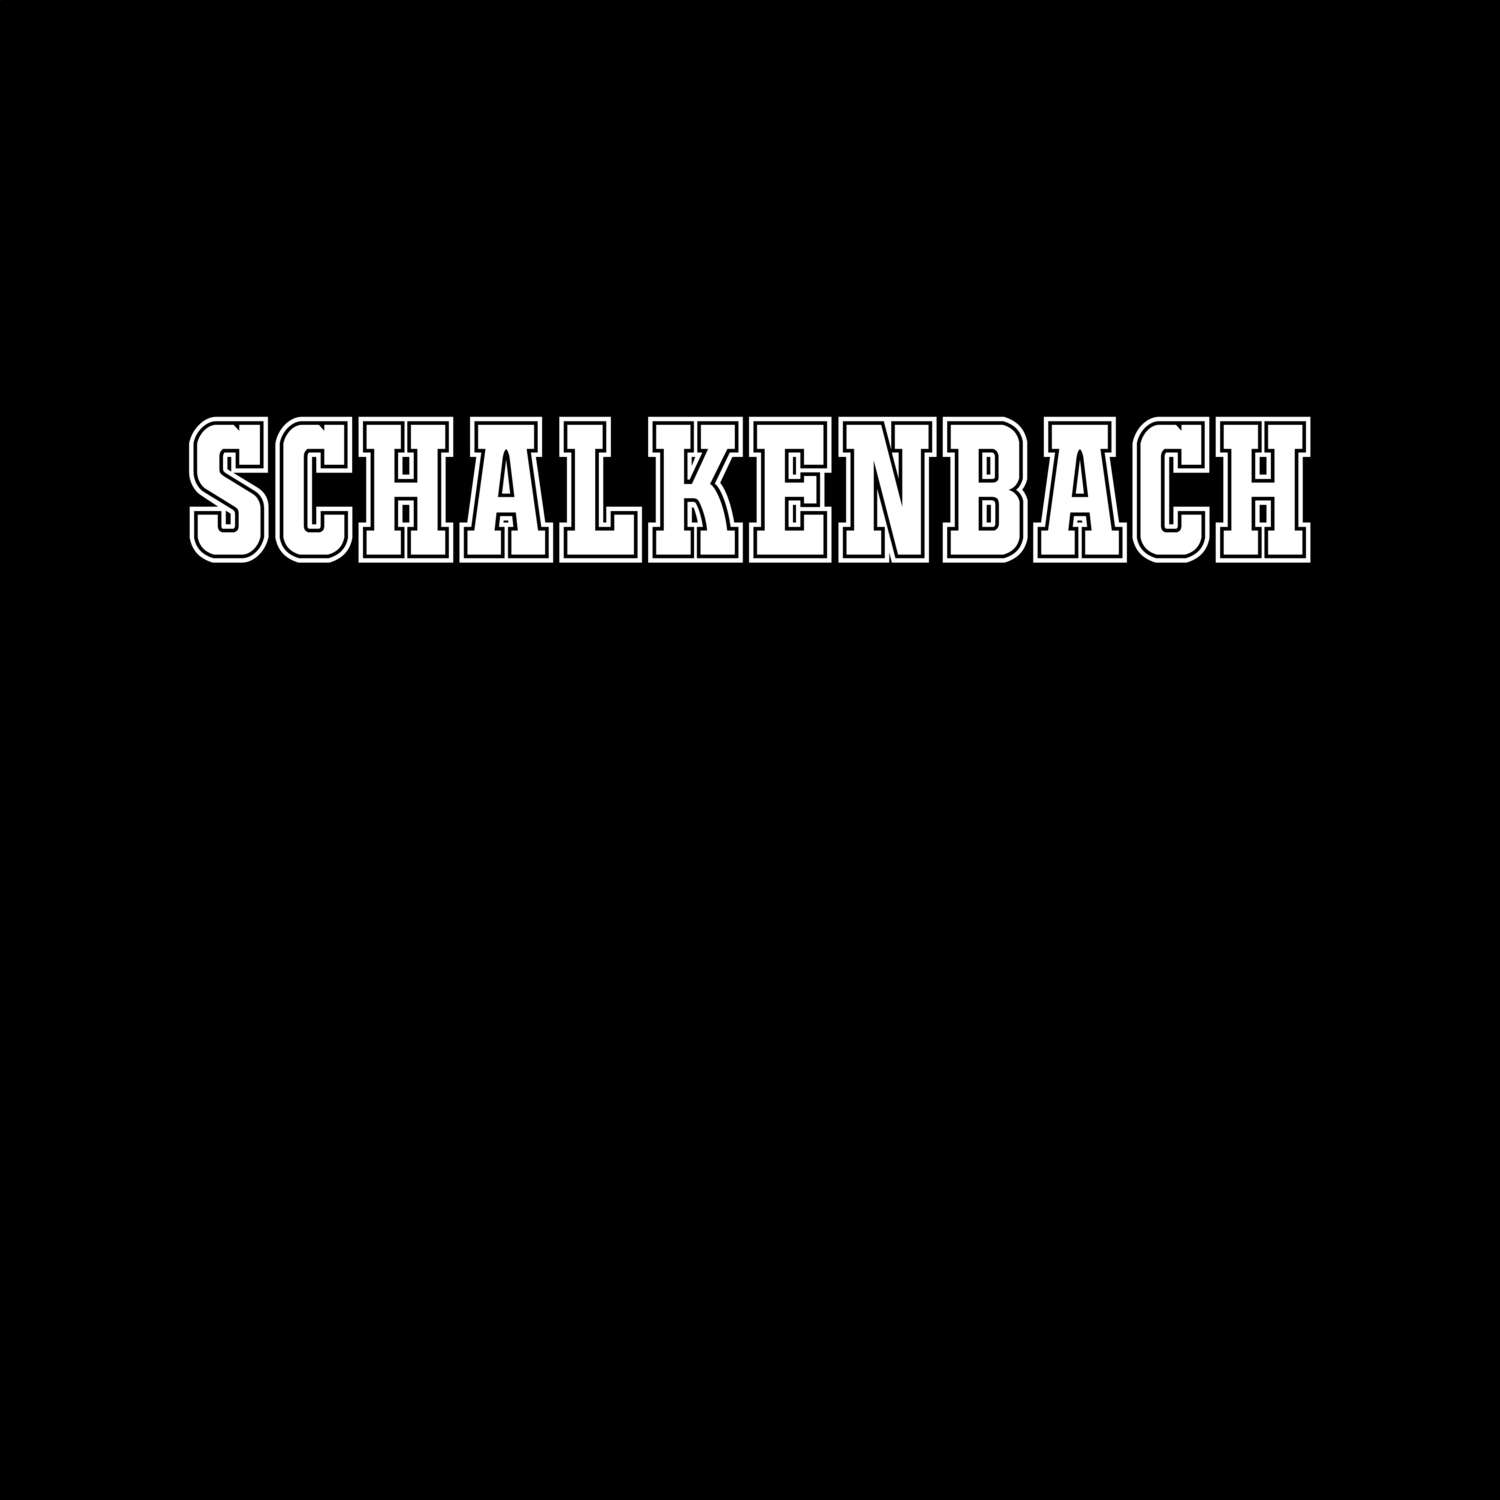 Schalkenbach T-Shirt »Classic«